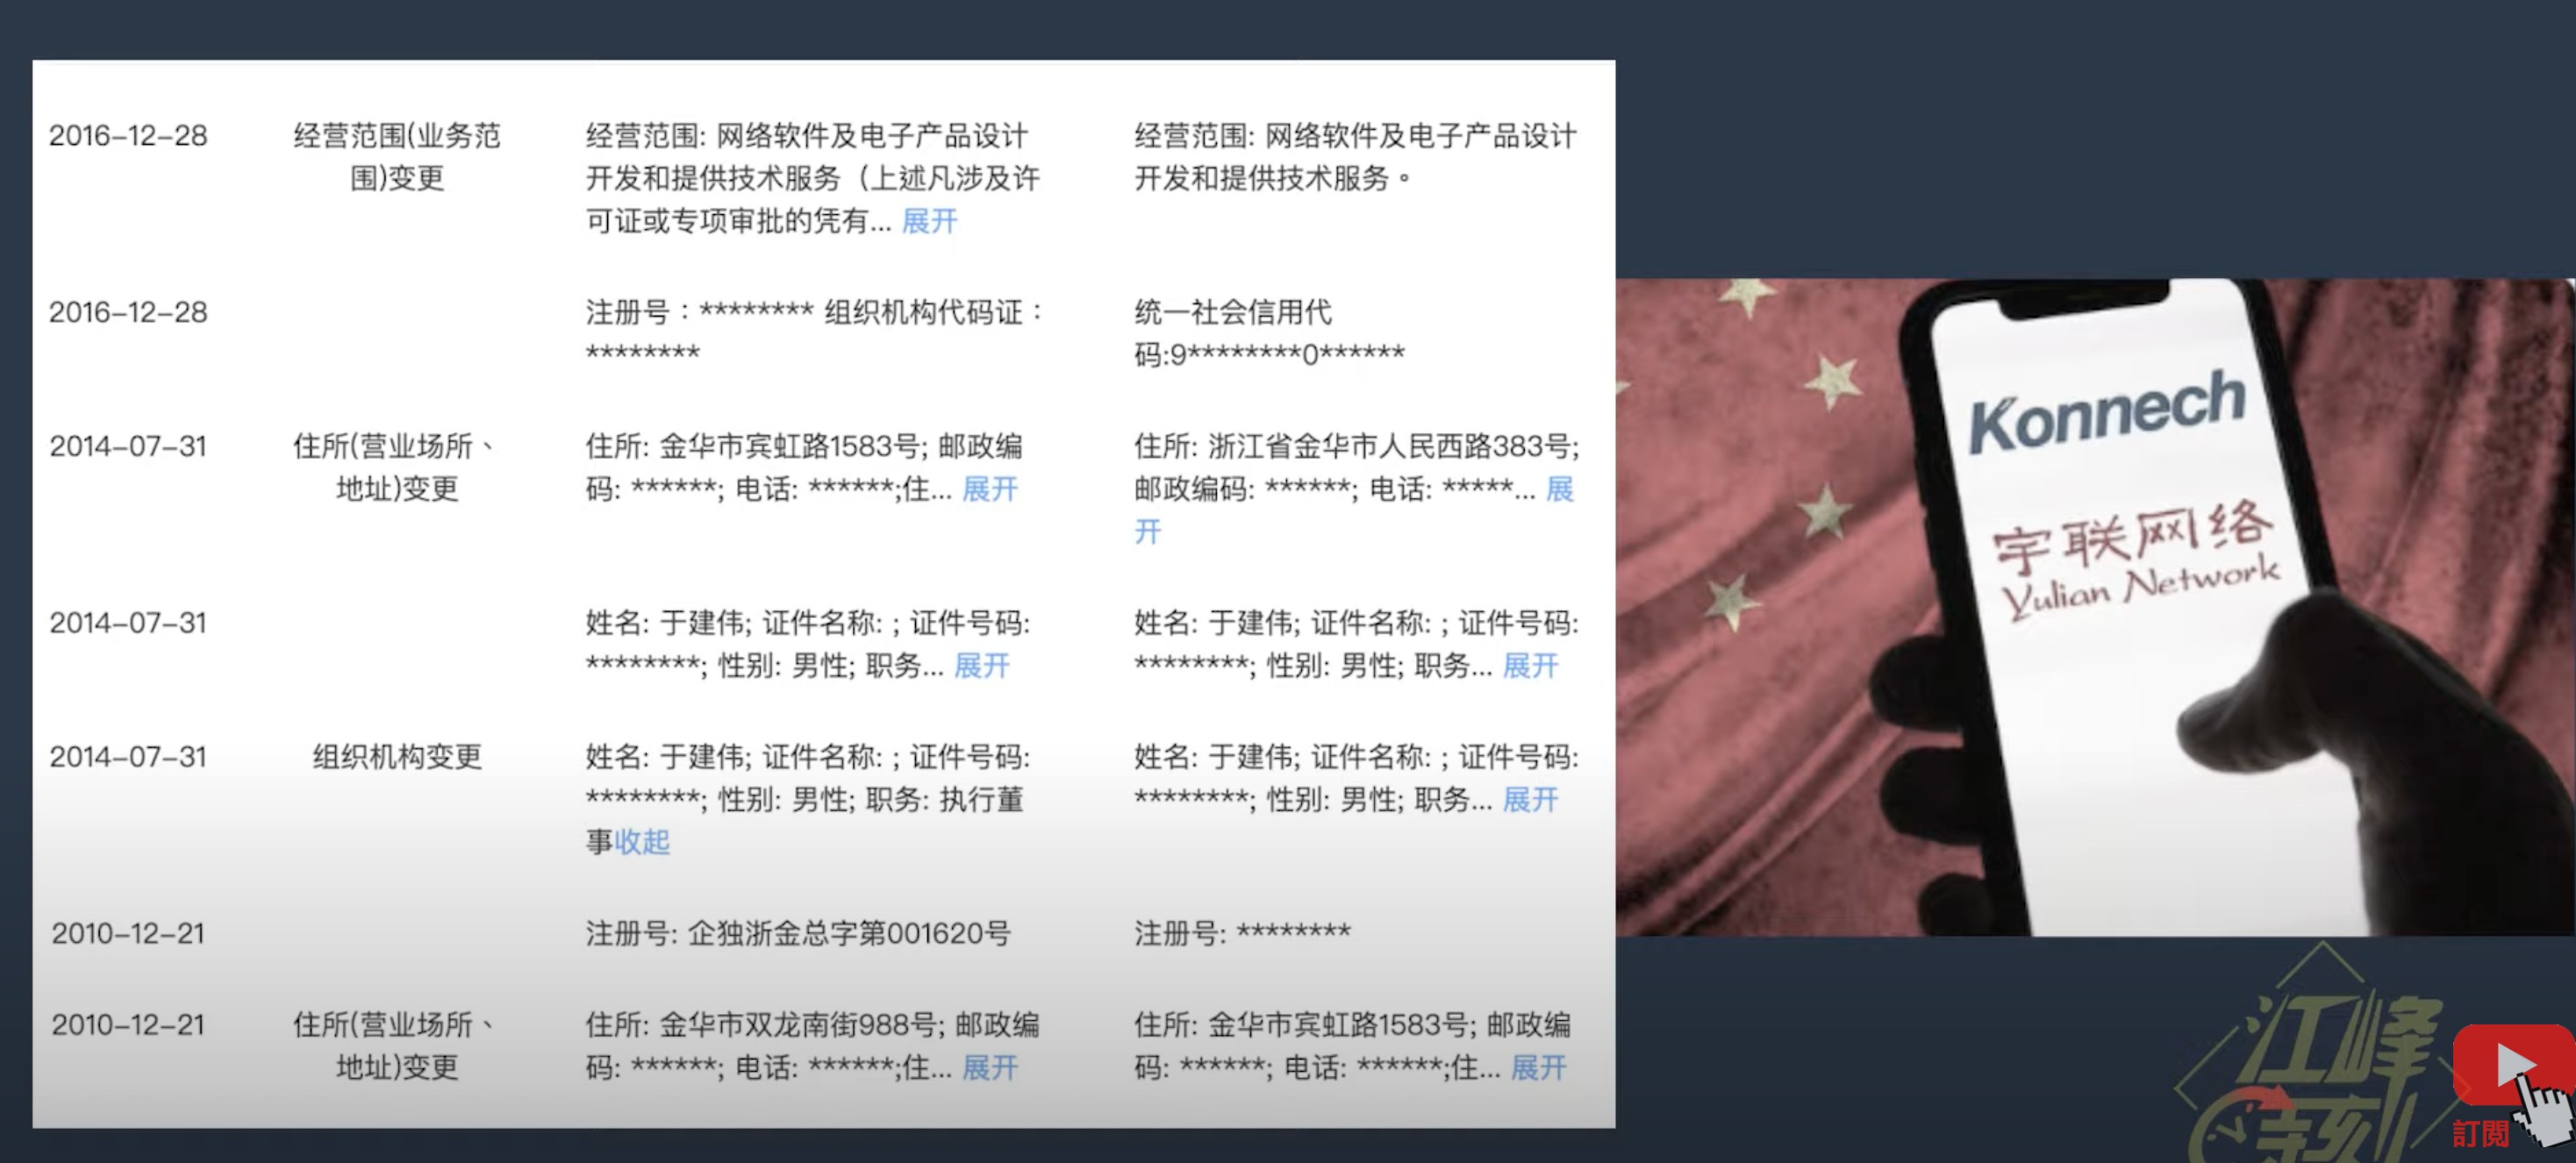 江峰: 美选举数据发往中国涉案华裔CEO被捕内幕惊人| 江峰| 美国| 选举 